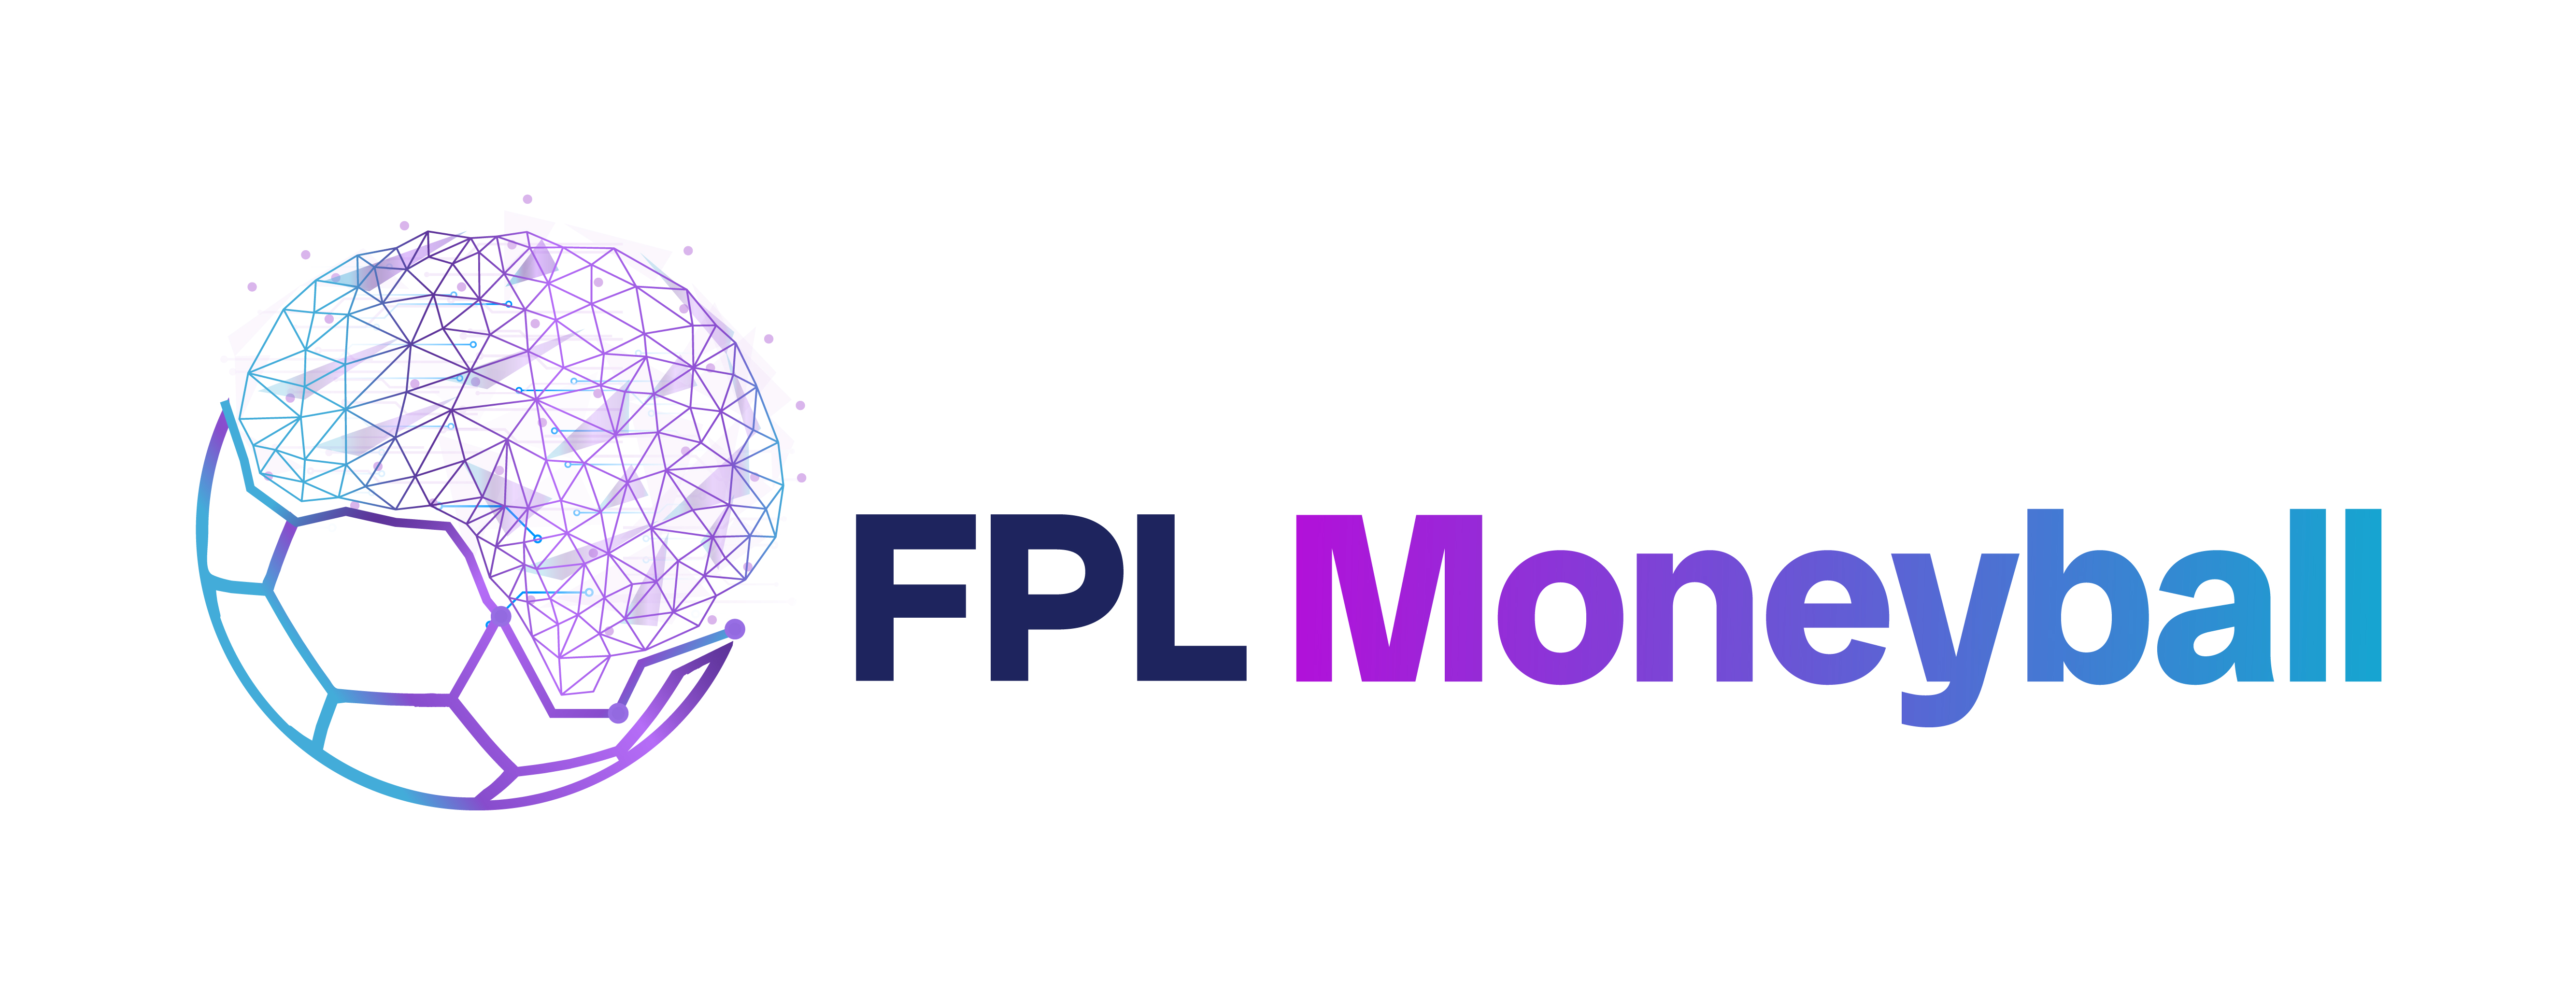 FPL Moneyball Logo